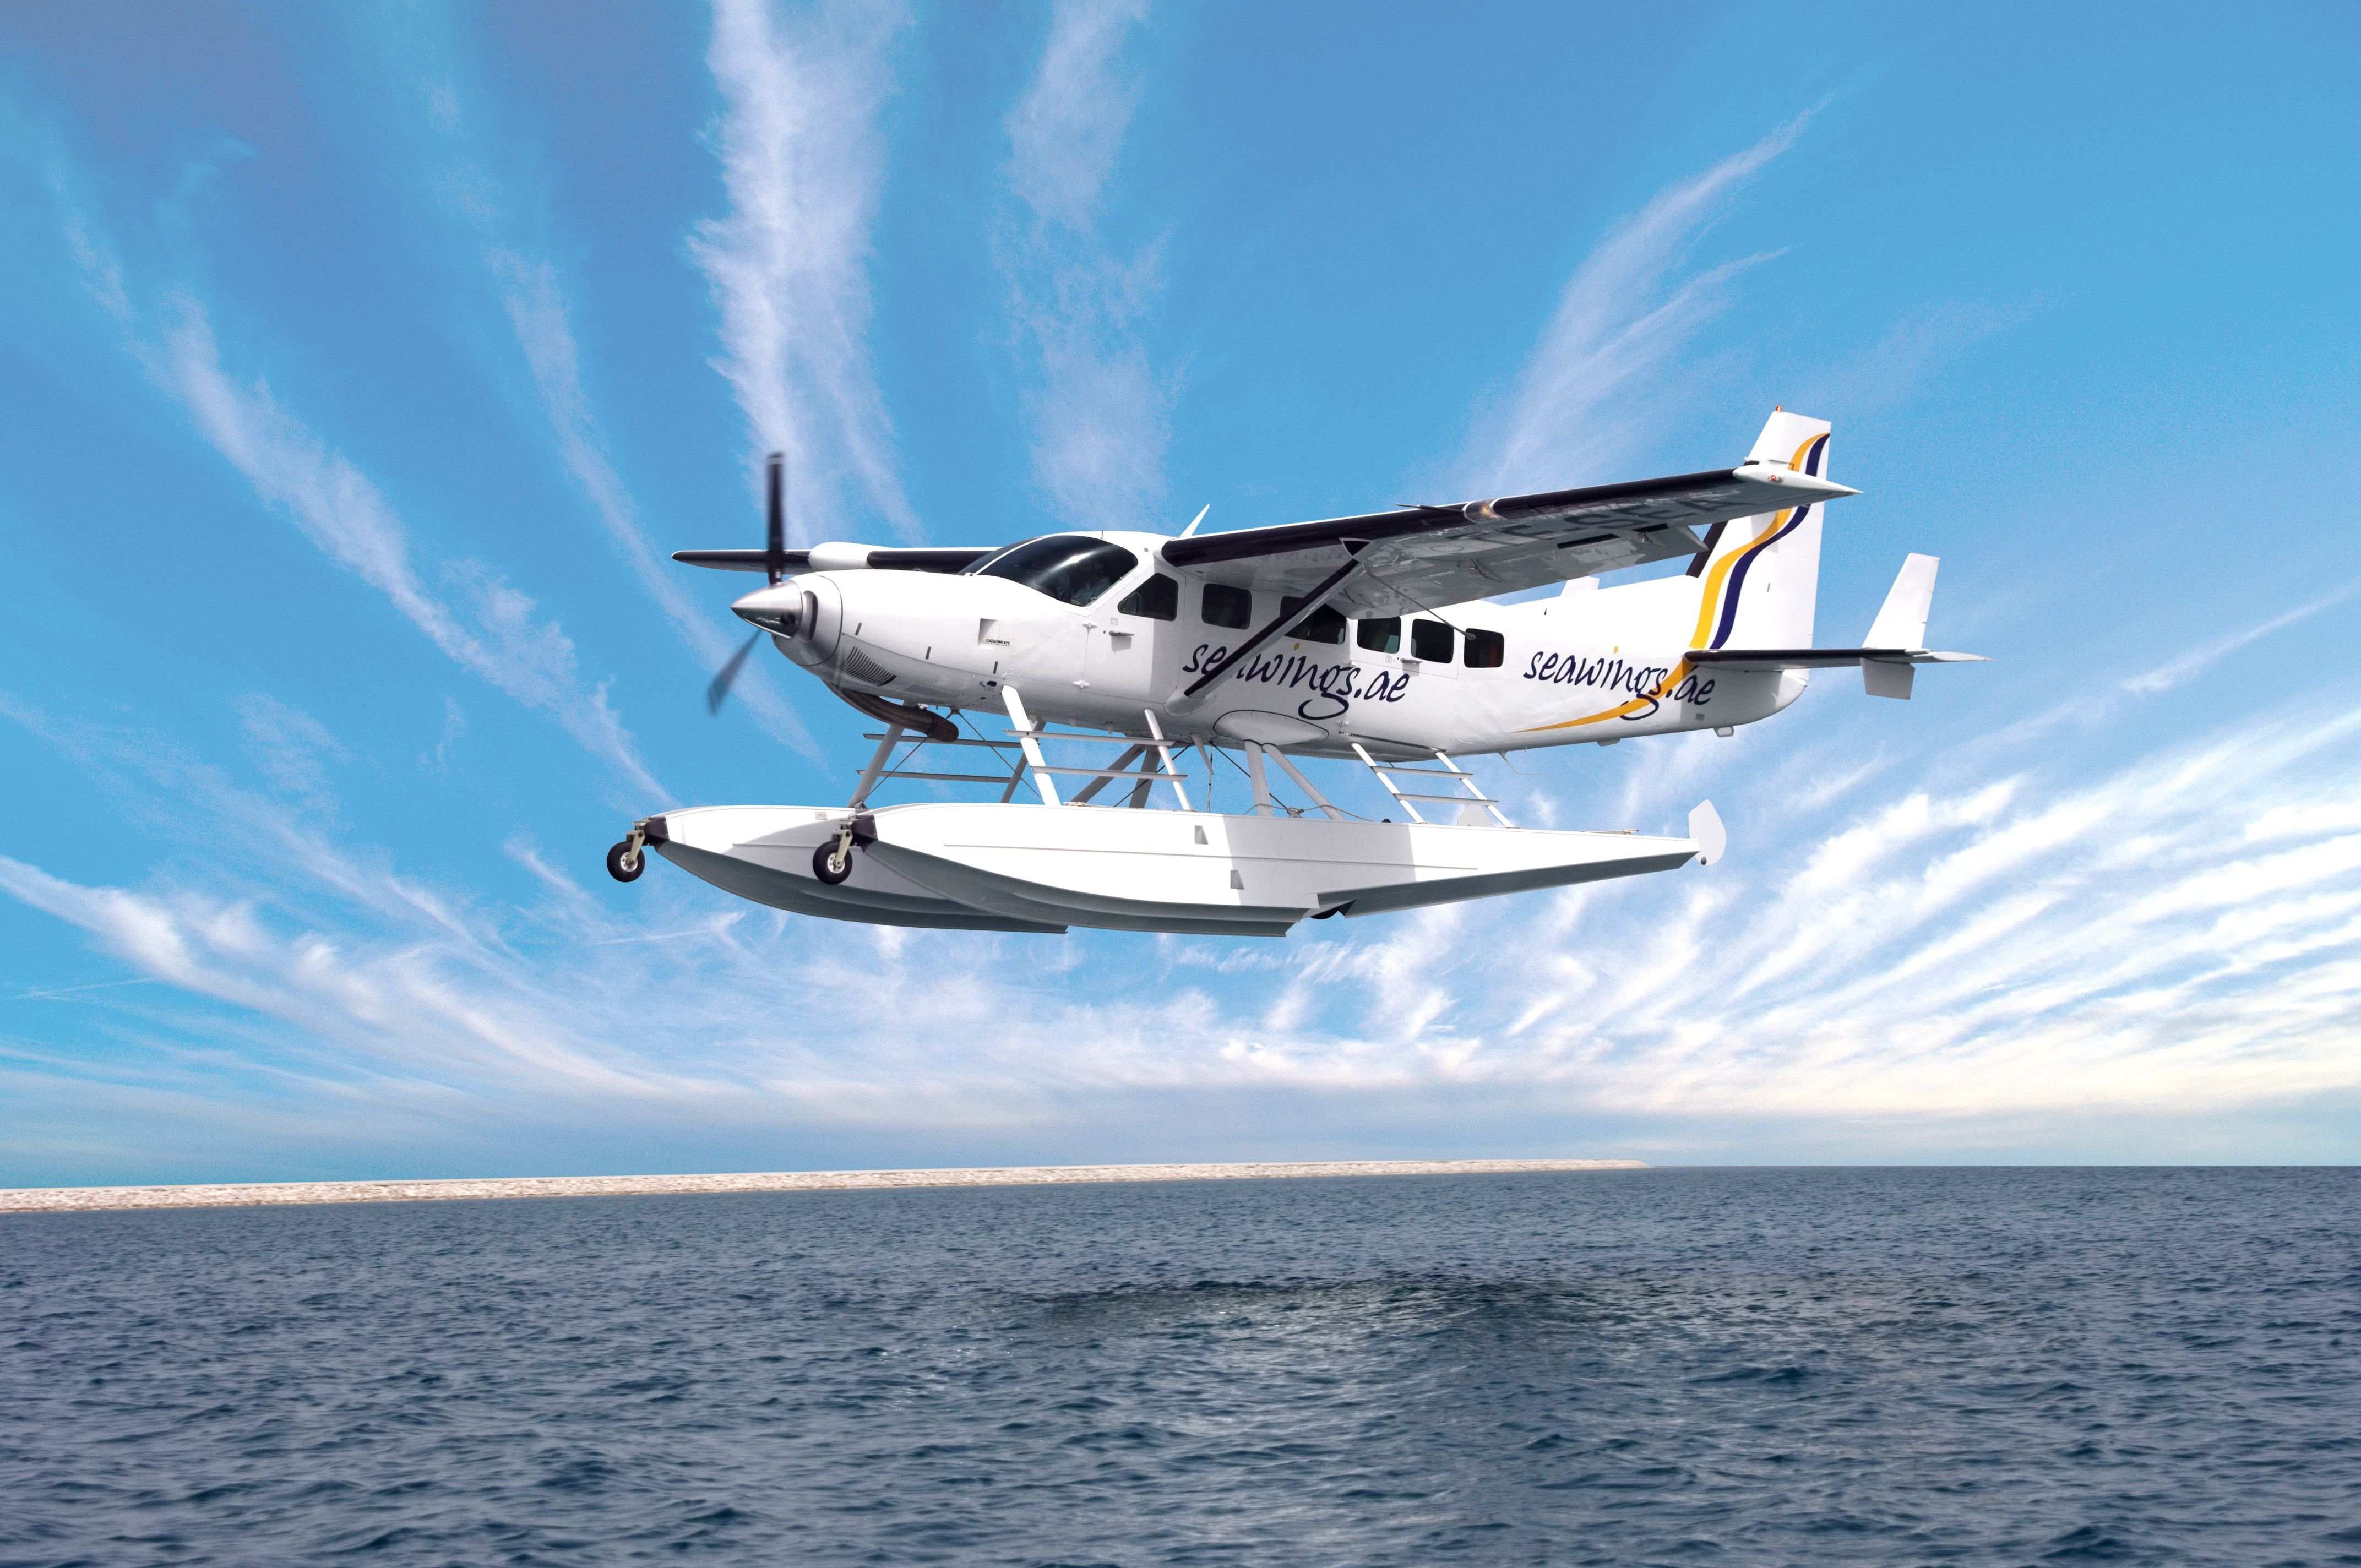 Самолет летающий по воде. Цесна гидроплан. Цесна самолет гидроплан. Гидросамолет Cessna, 208 Carava. Cessna 208 Caravan Amphibian.